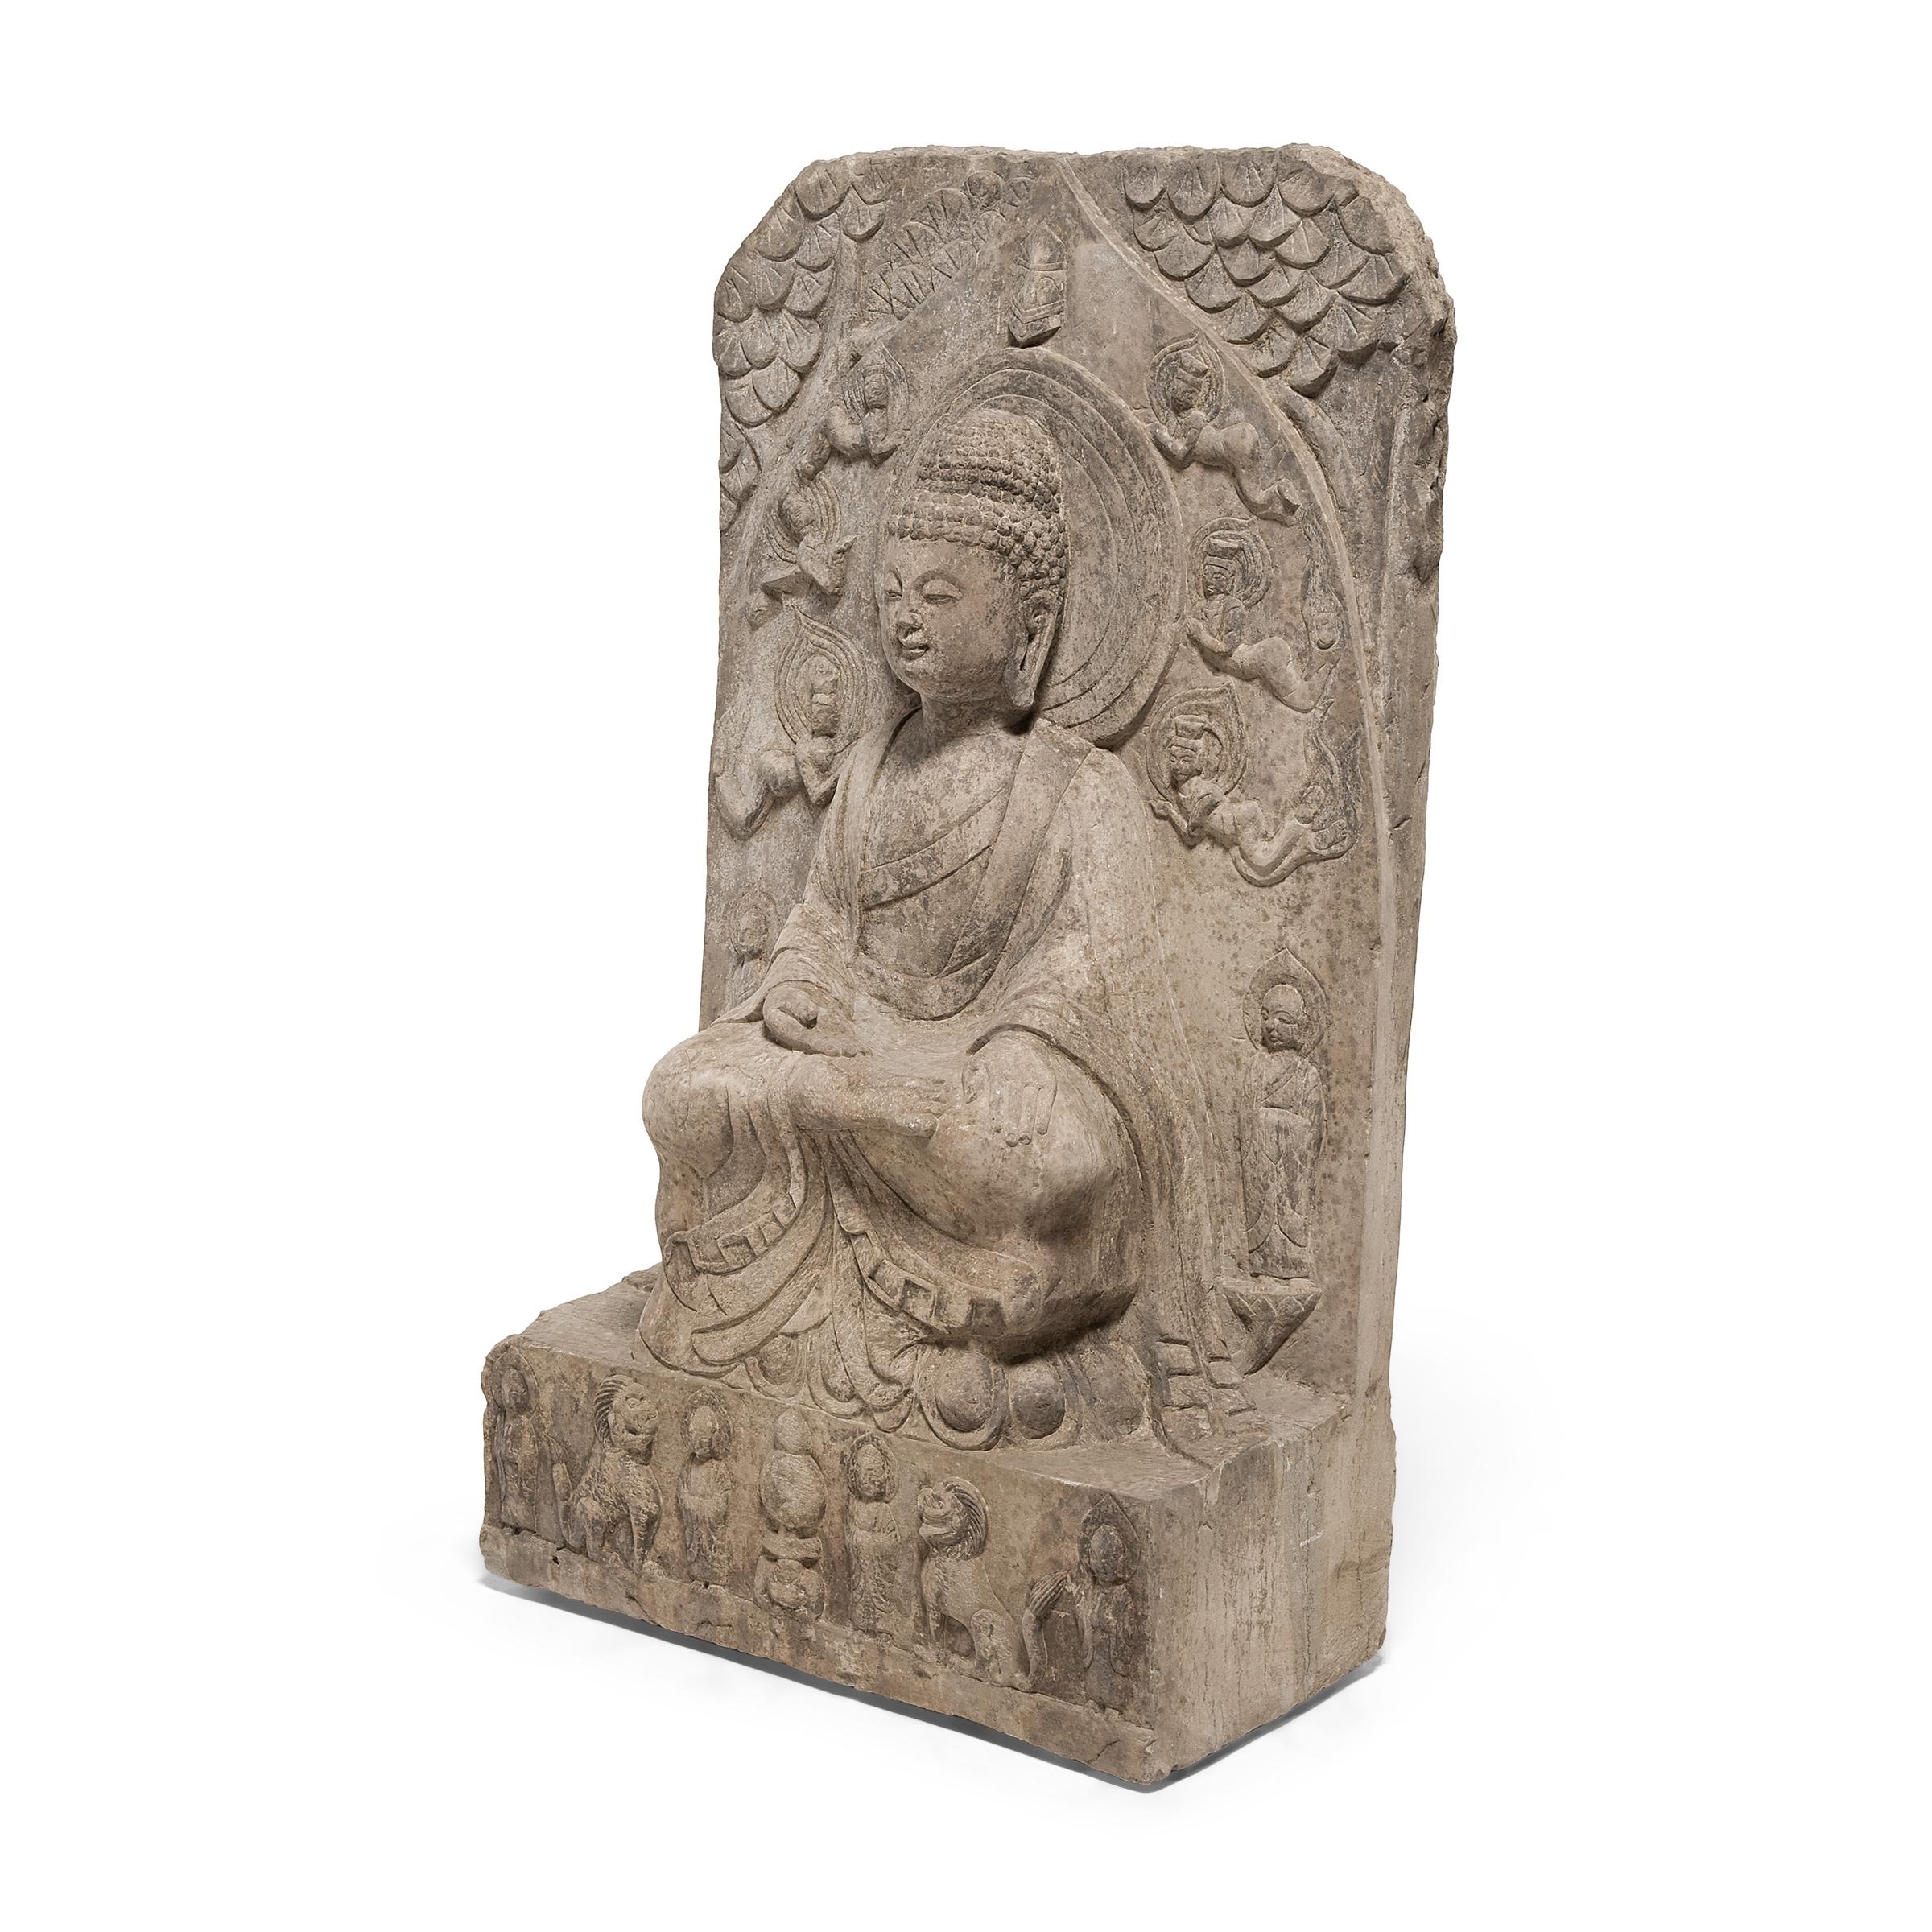 Cette stèle en pierre sculptée représente le Bouddha historique, connu également sous les noms de Shaka, Shakyamuni ou Siddhartha Gautama. Assis en méditation perpétuelle, le Bouddha incarne les vertus de la sagesse et du calme. Sculpté à la main